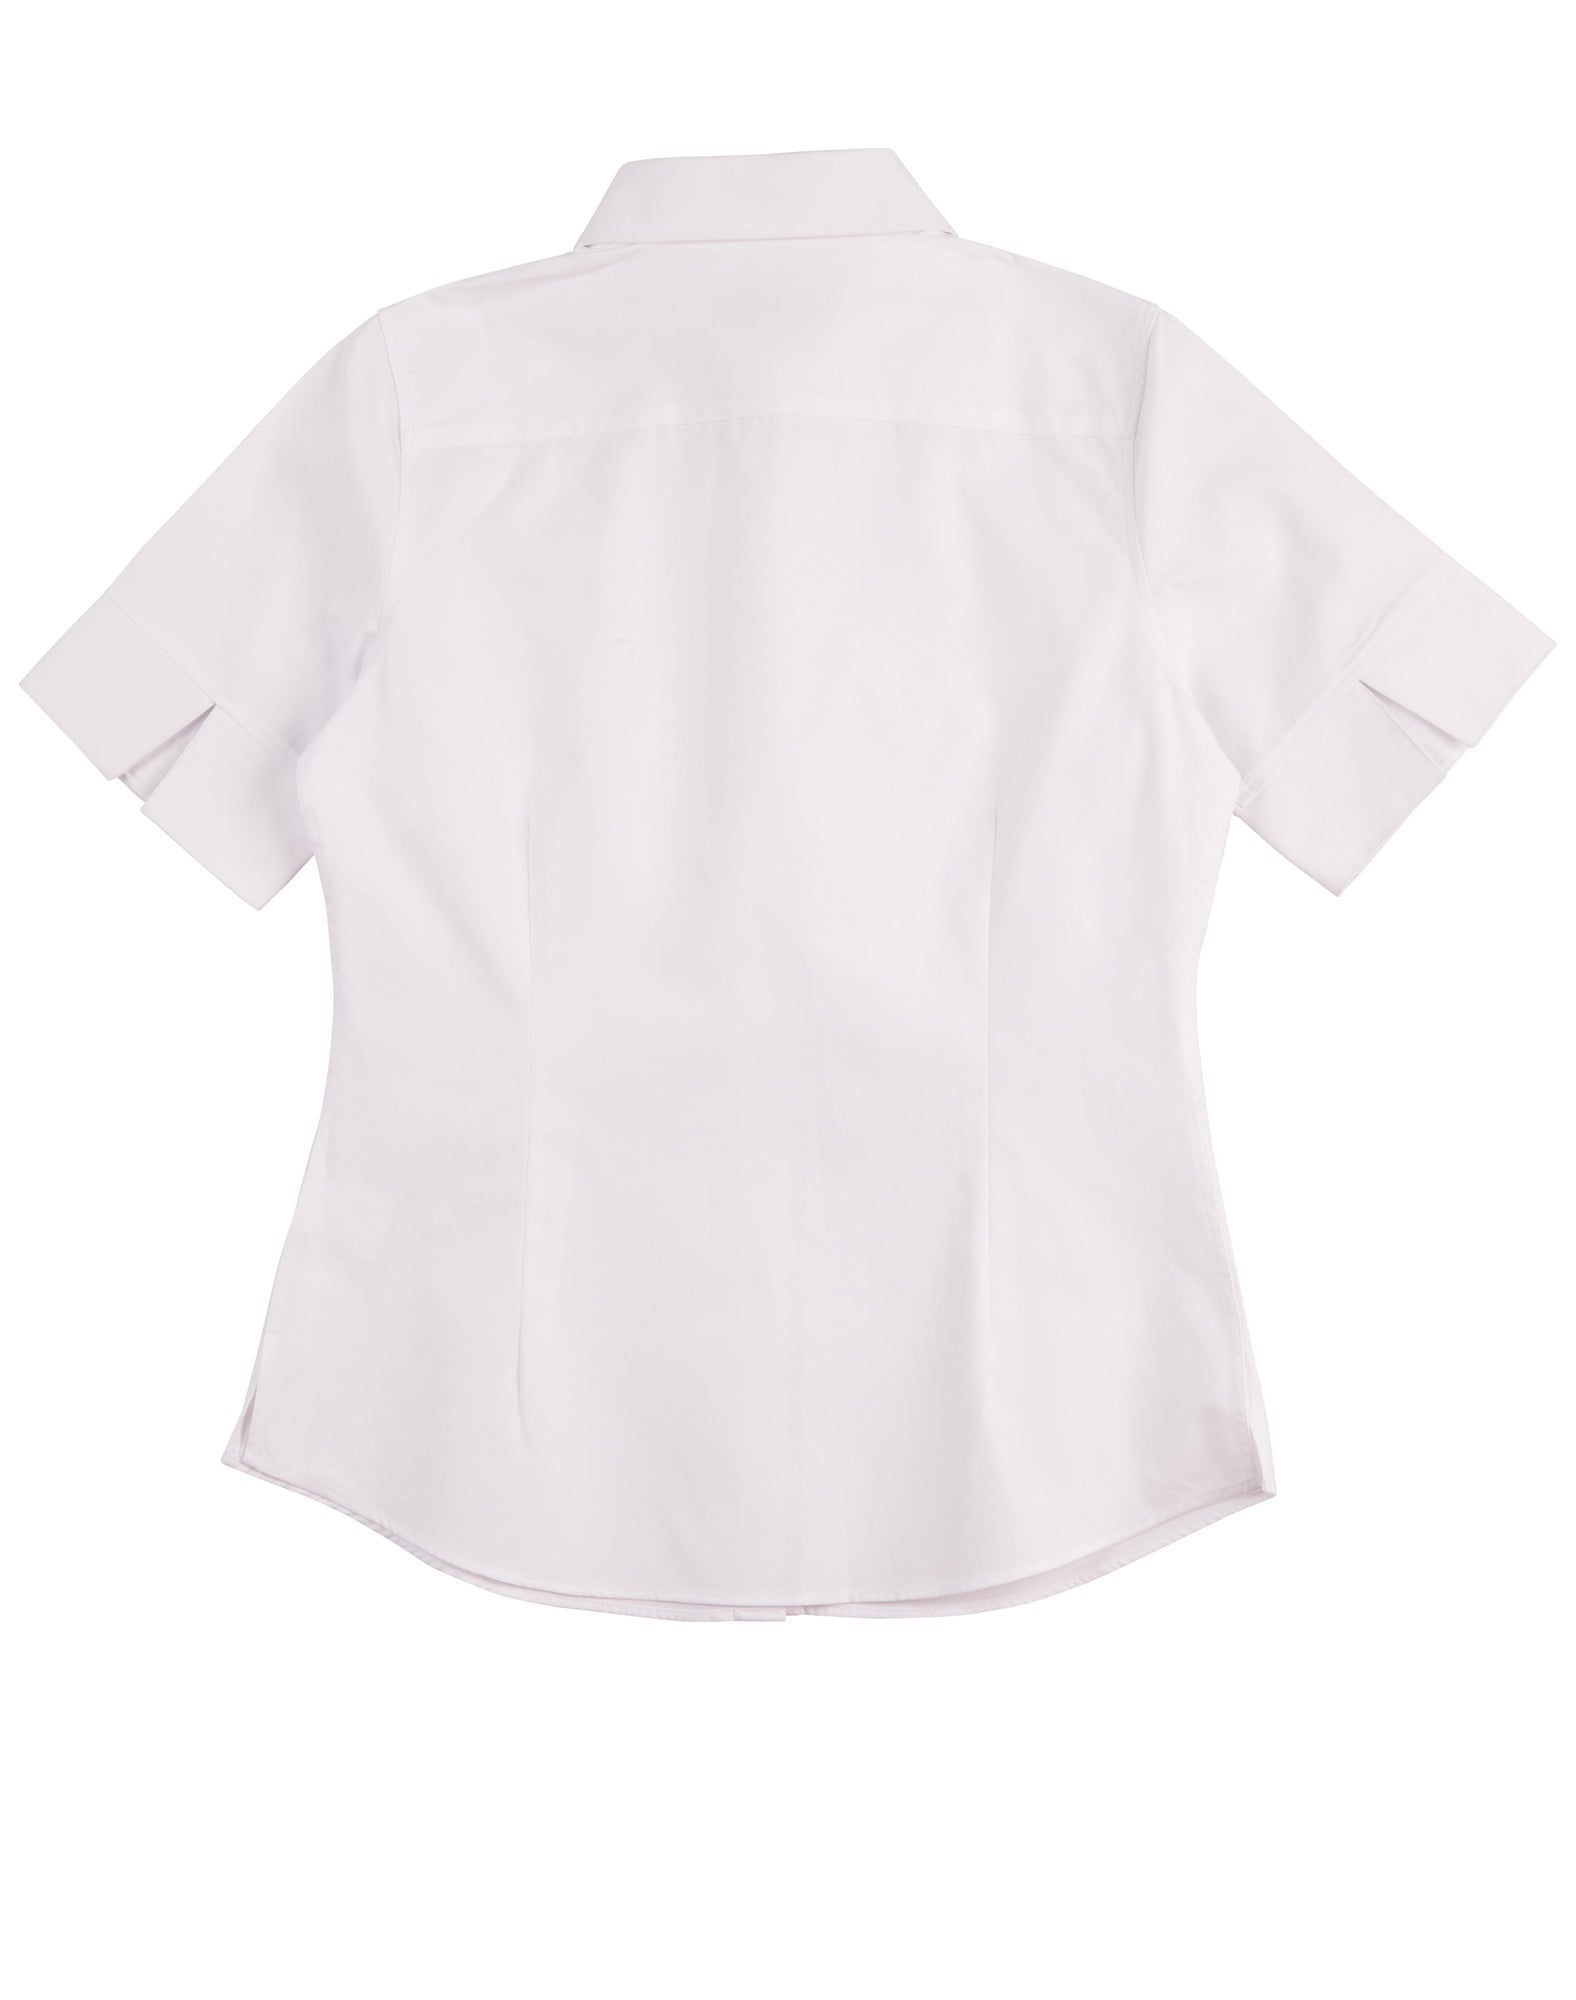 Winning Spirit Women's CVC Oxford Short Sleeve Shirt (M8040S)